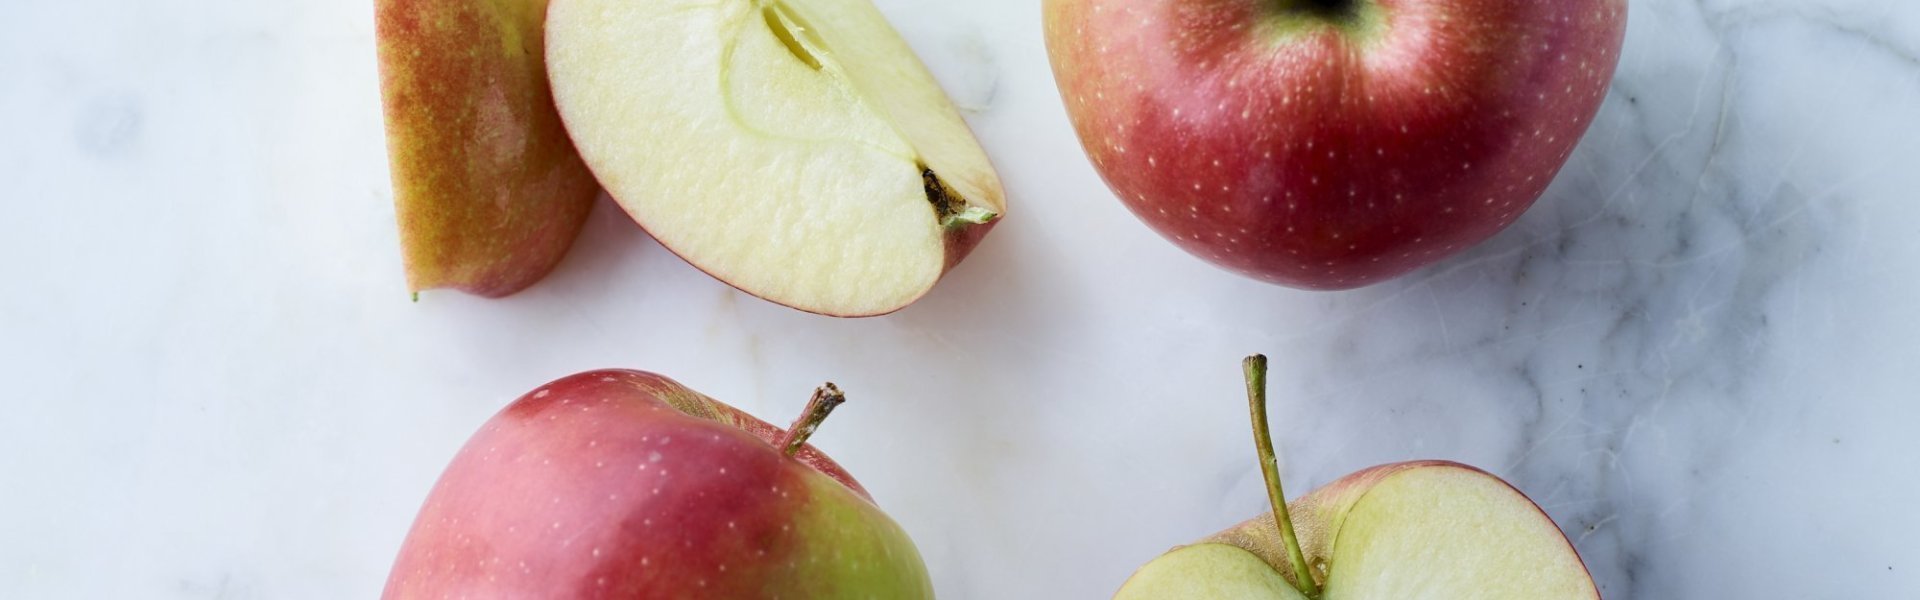 Jonagold appels liggen op marmere keukenblad. Enkele appels zijn aangesneden. 